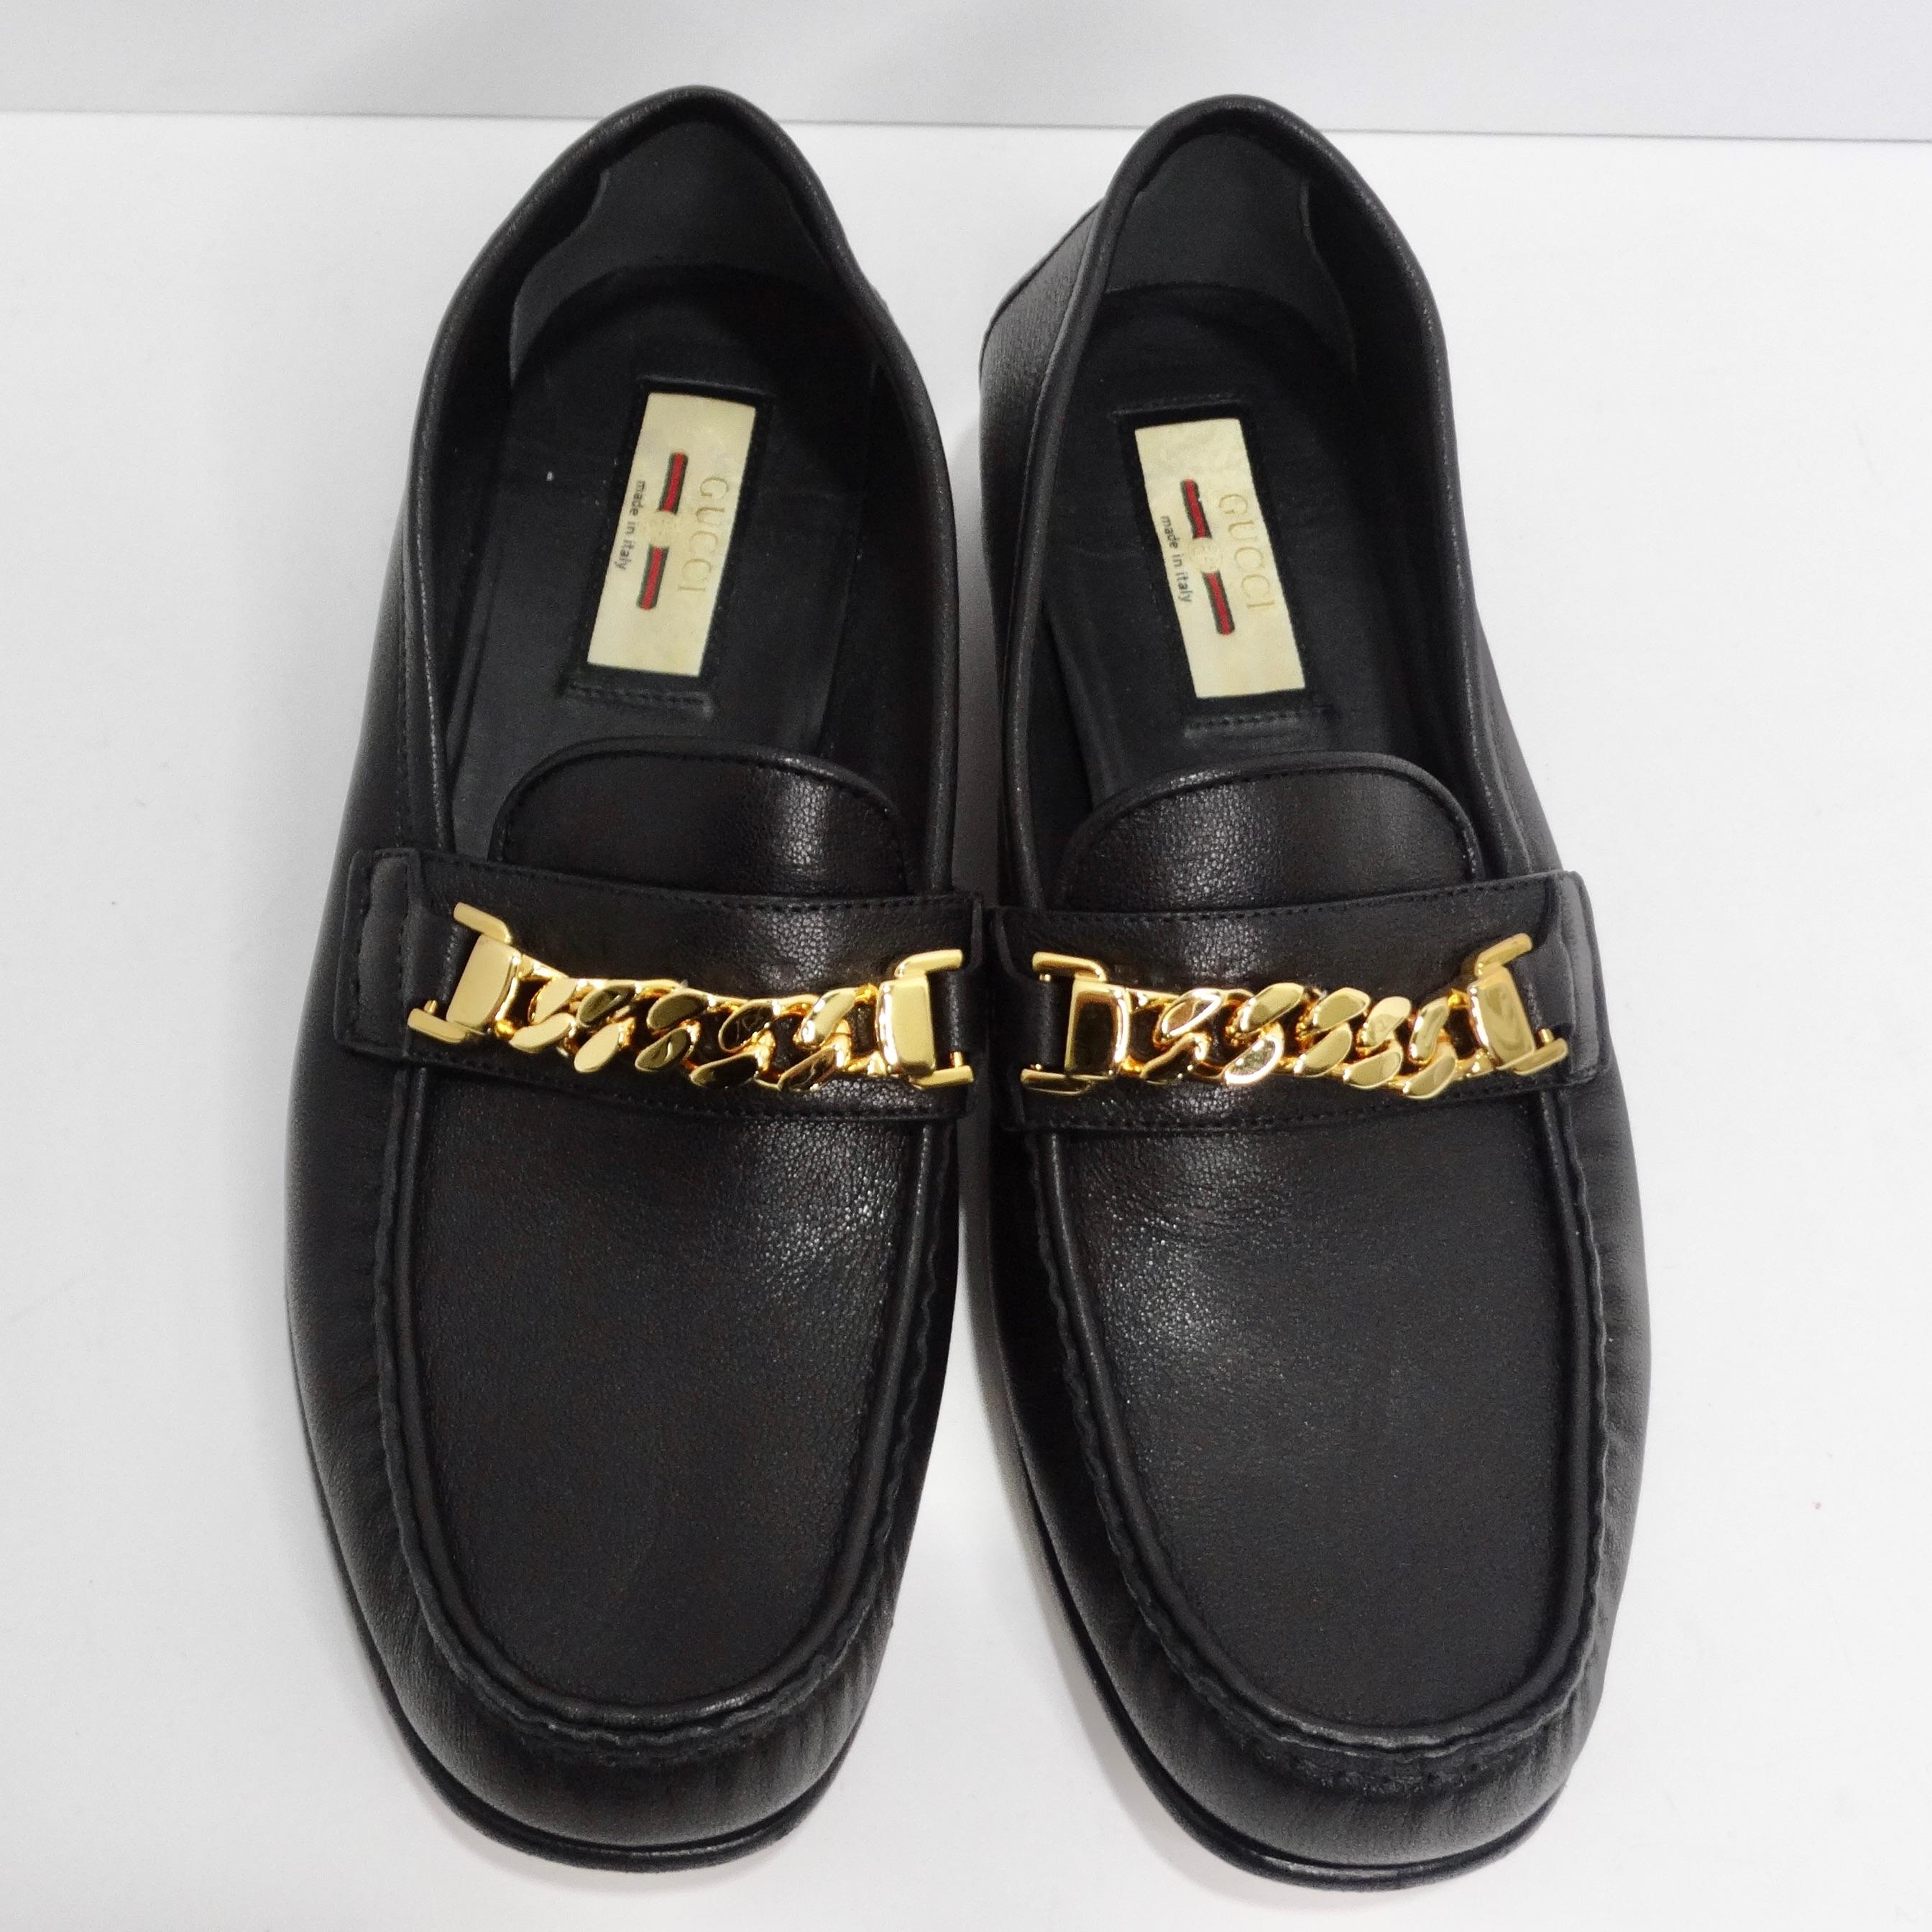 Voici les mocassins Gucci Sylvie à chaîne ton or en cuir noir, un ajout intemporel et polyvalent à votre collection de chaussures qui combine sans effort un style classique avec une touche de luxe. Ces mocassins en cuir noir sont une véritable